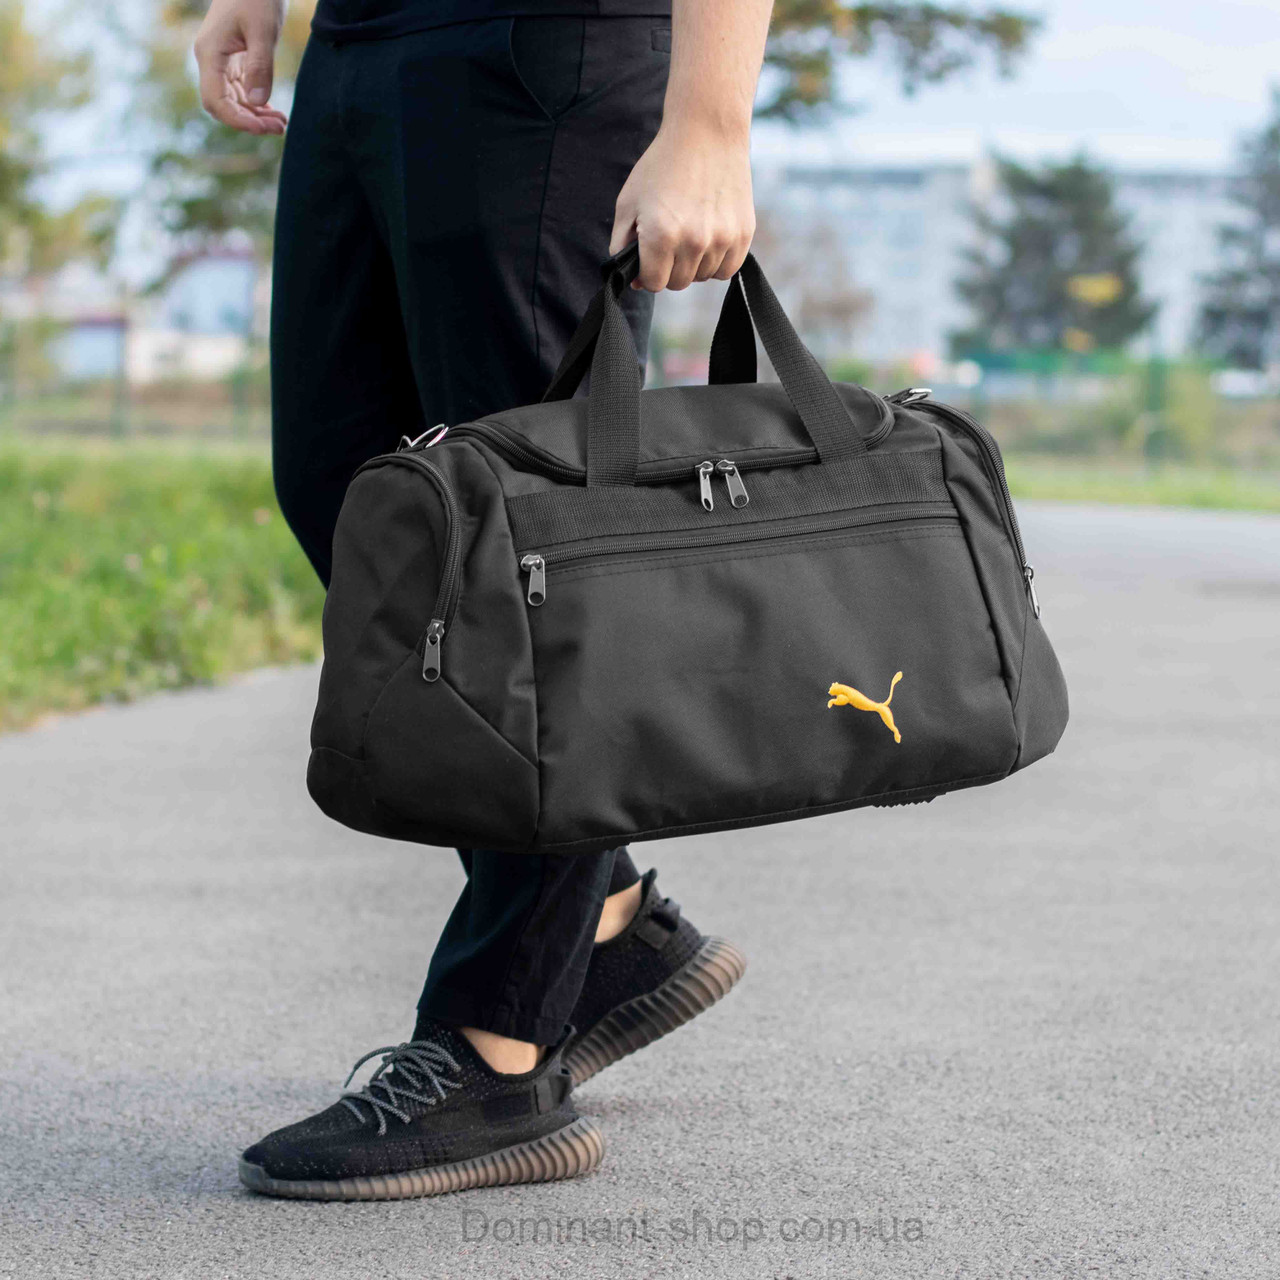 Чоловіча спортивна сумка дорожня P TALES Yellow чорна для поїздок та тренувань містка на 36 літри